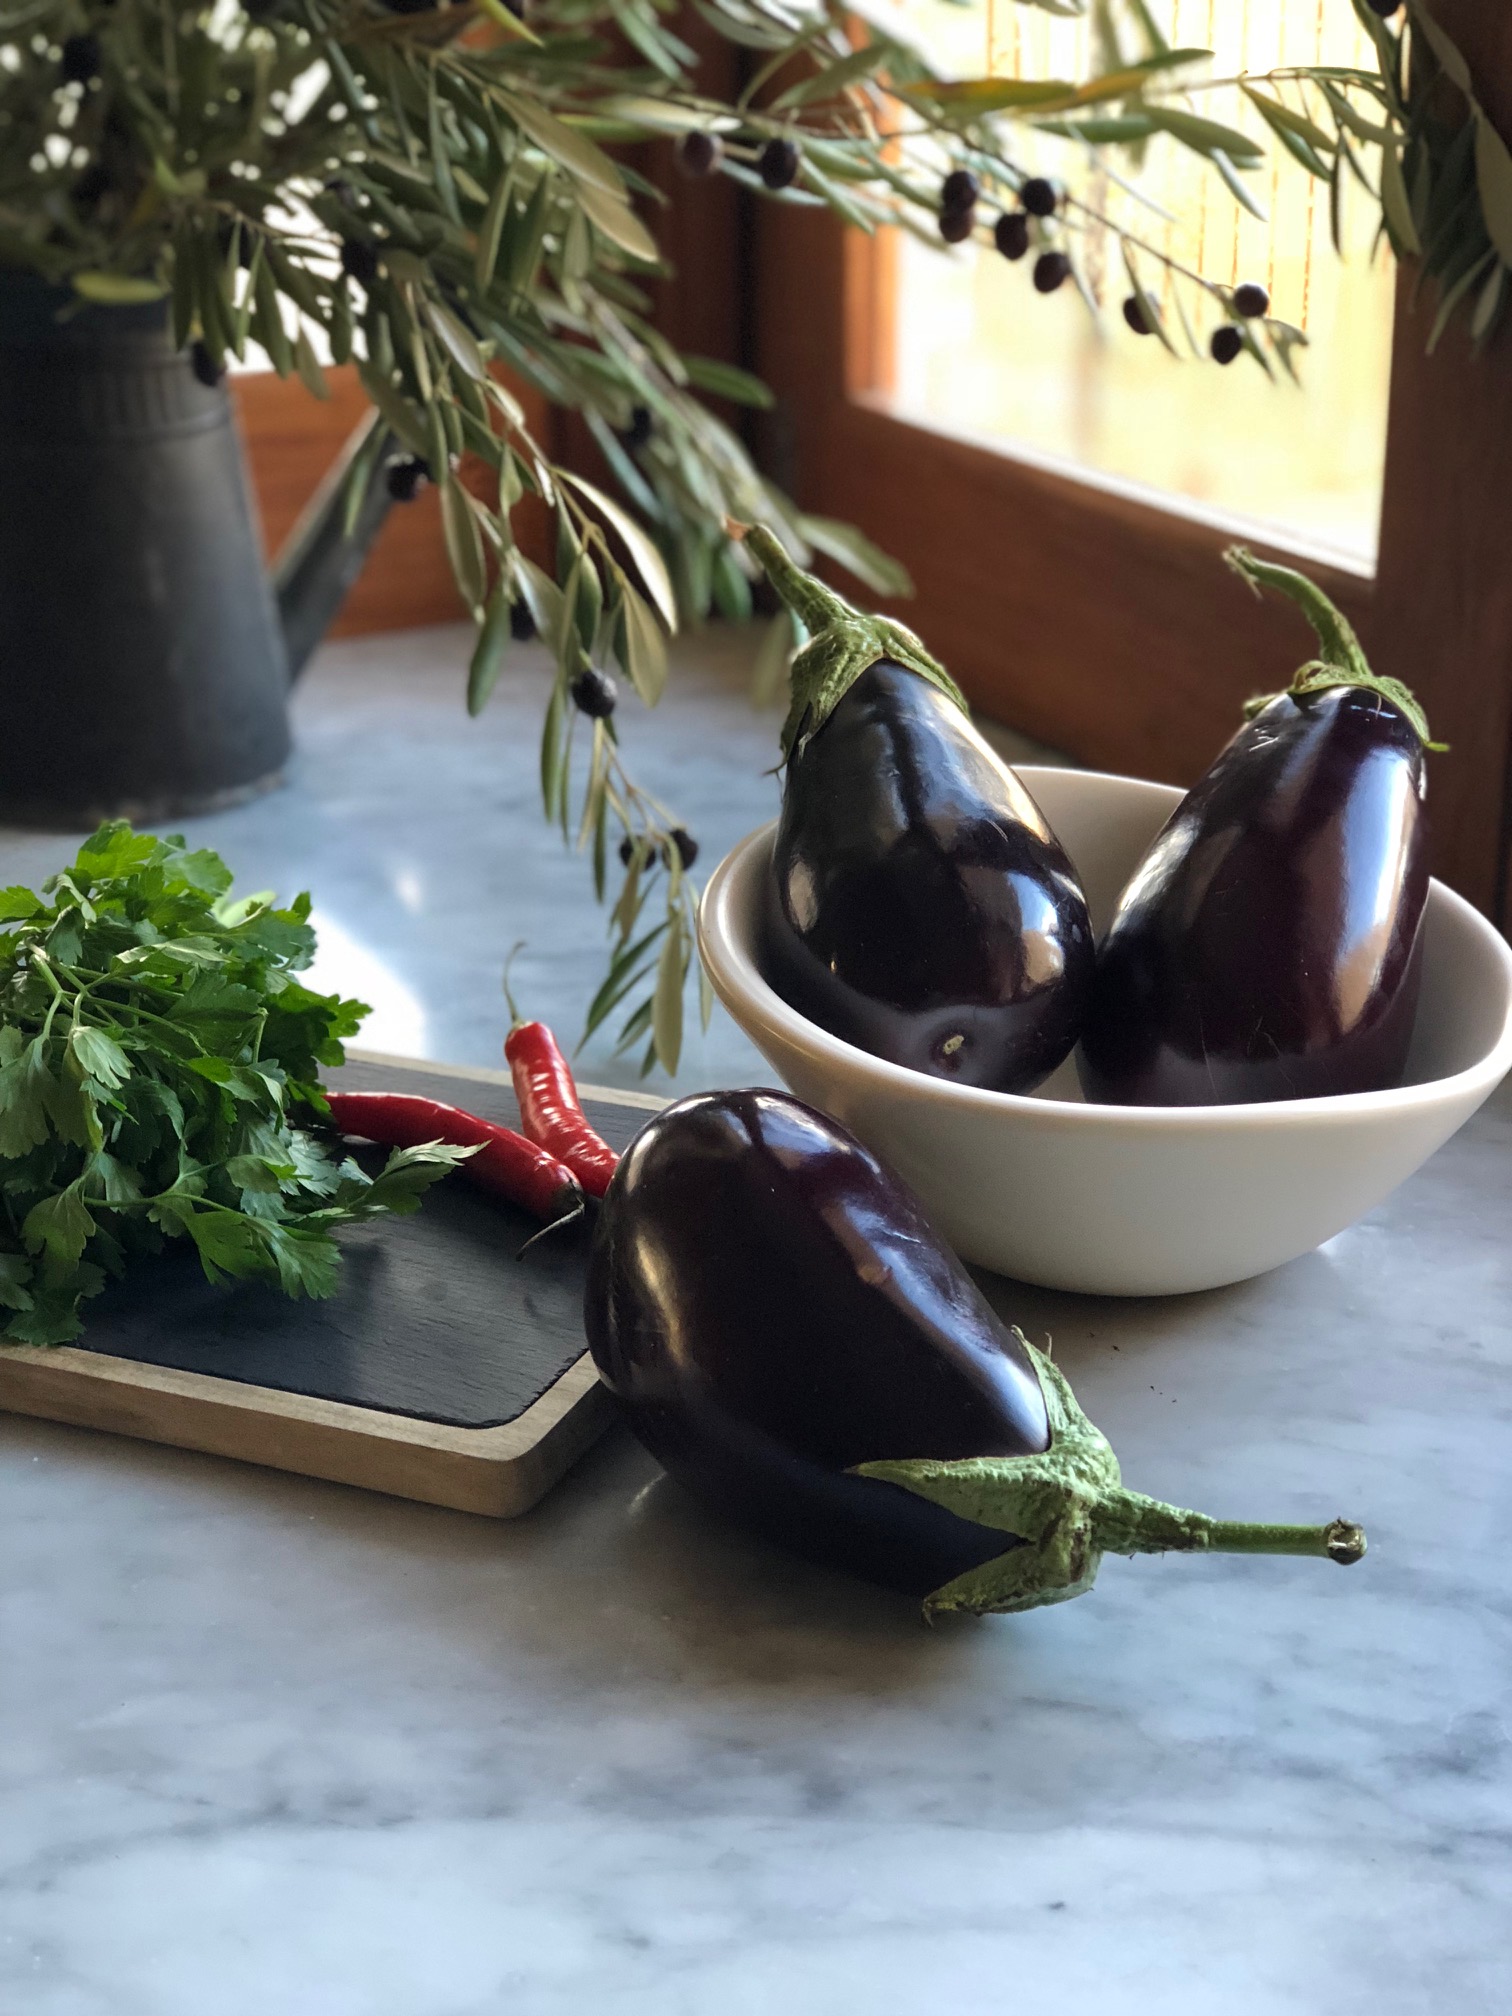 Spicy Eggplant jam